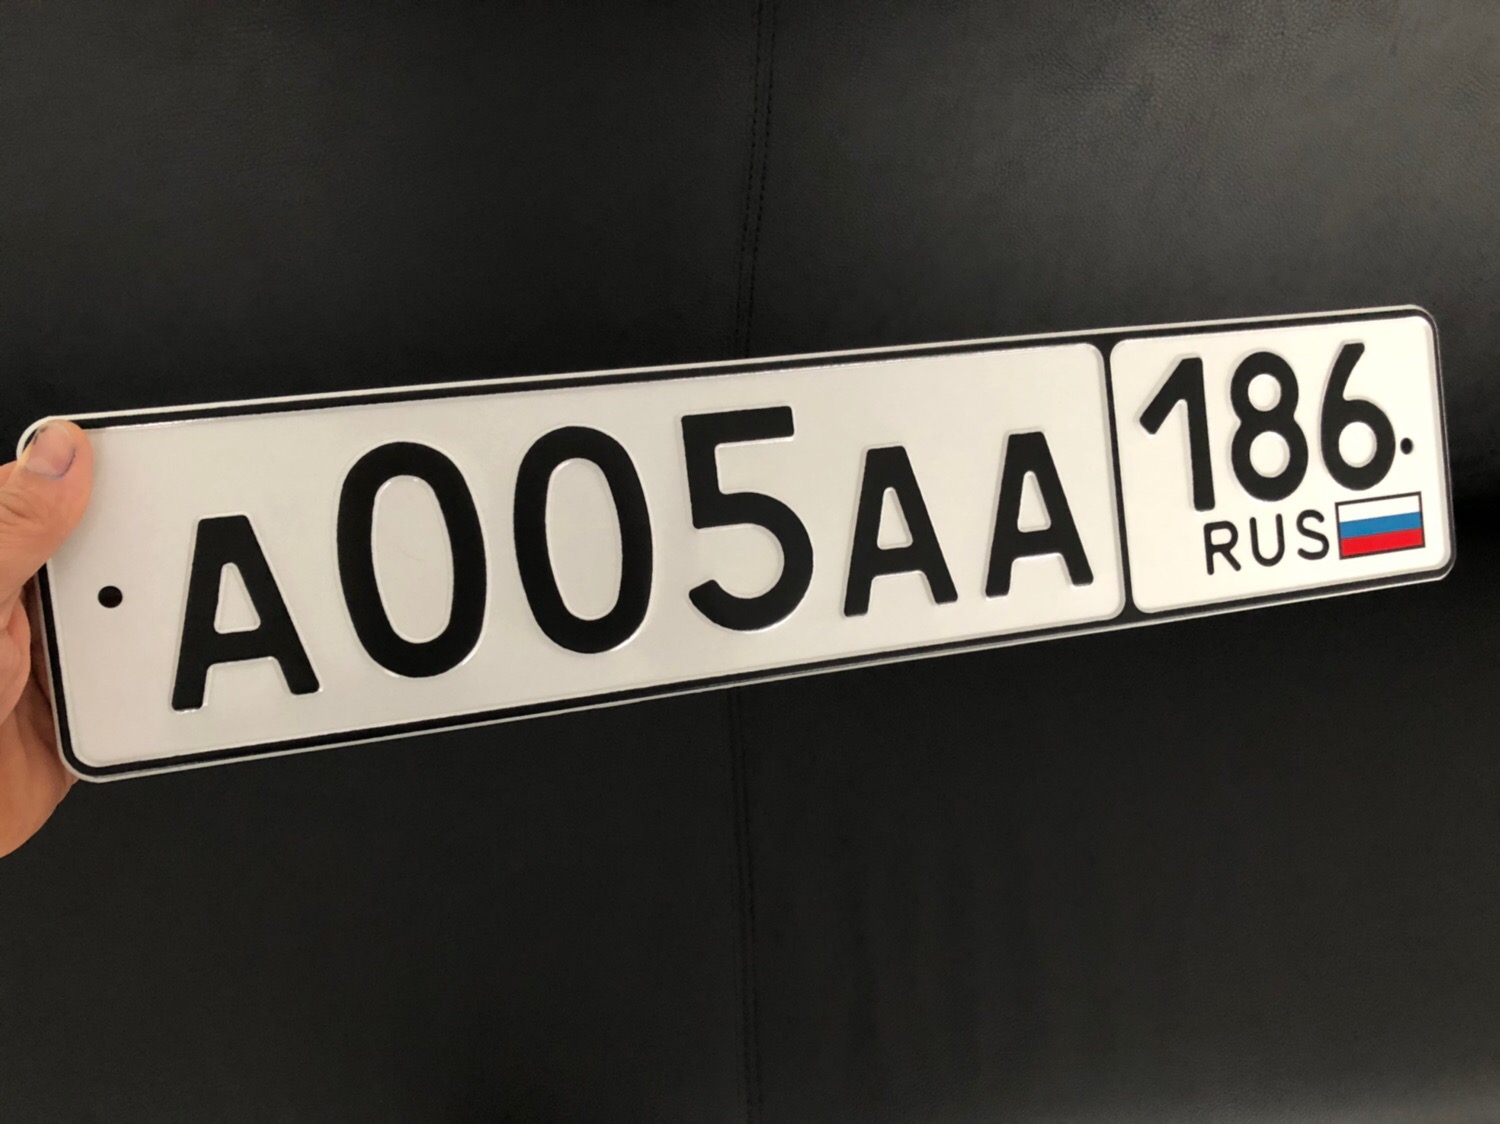 Продать номера в москве. Гос номер автомобиля. Государственный номерной знак. Красивые автономера. Регистрационный знак автомобиля.